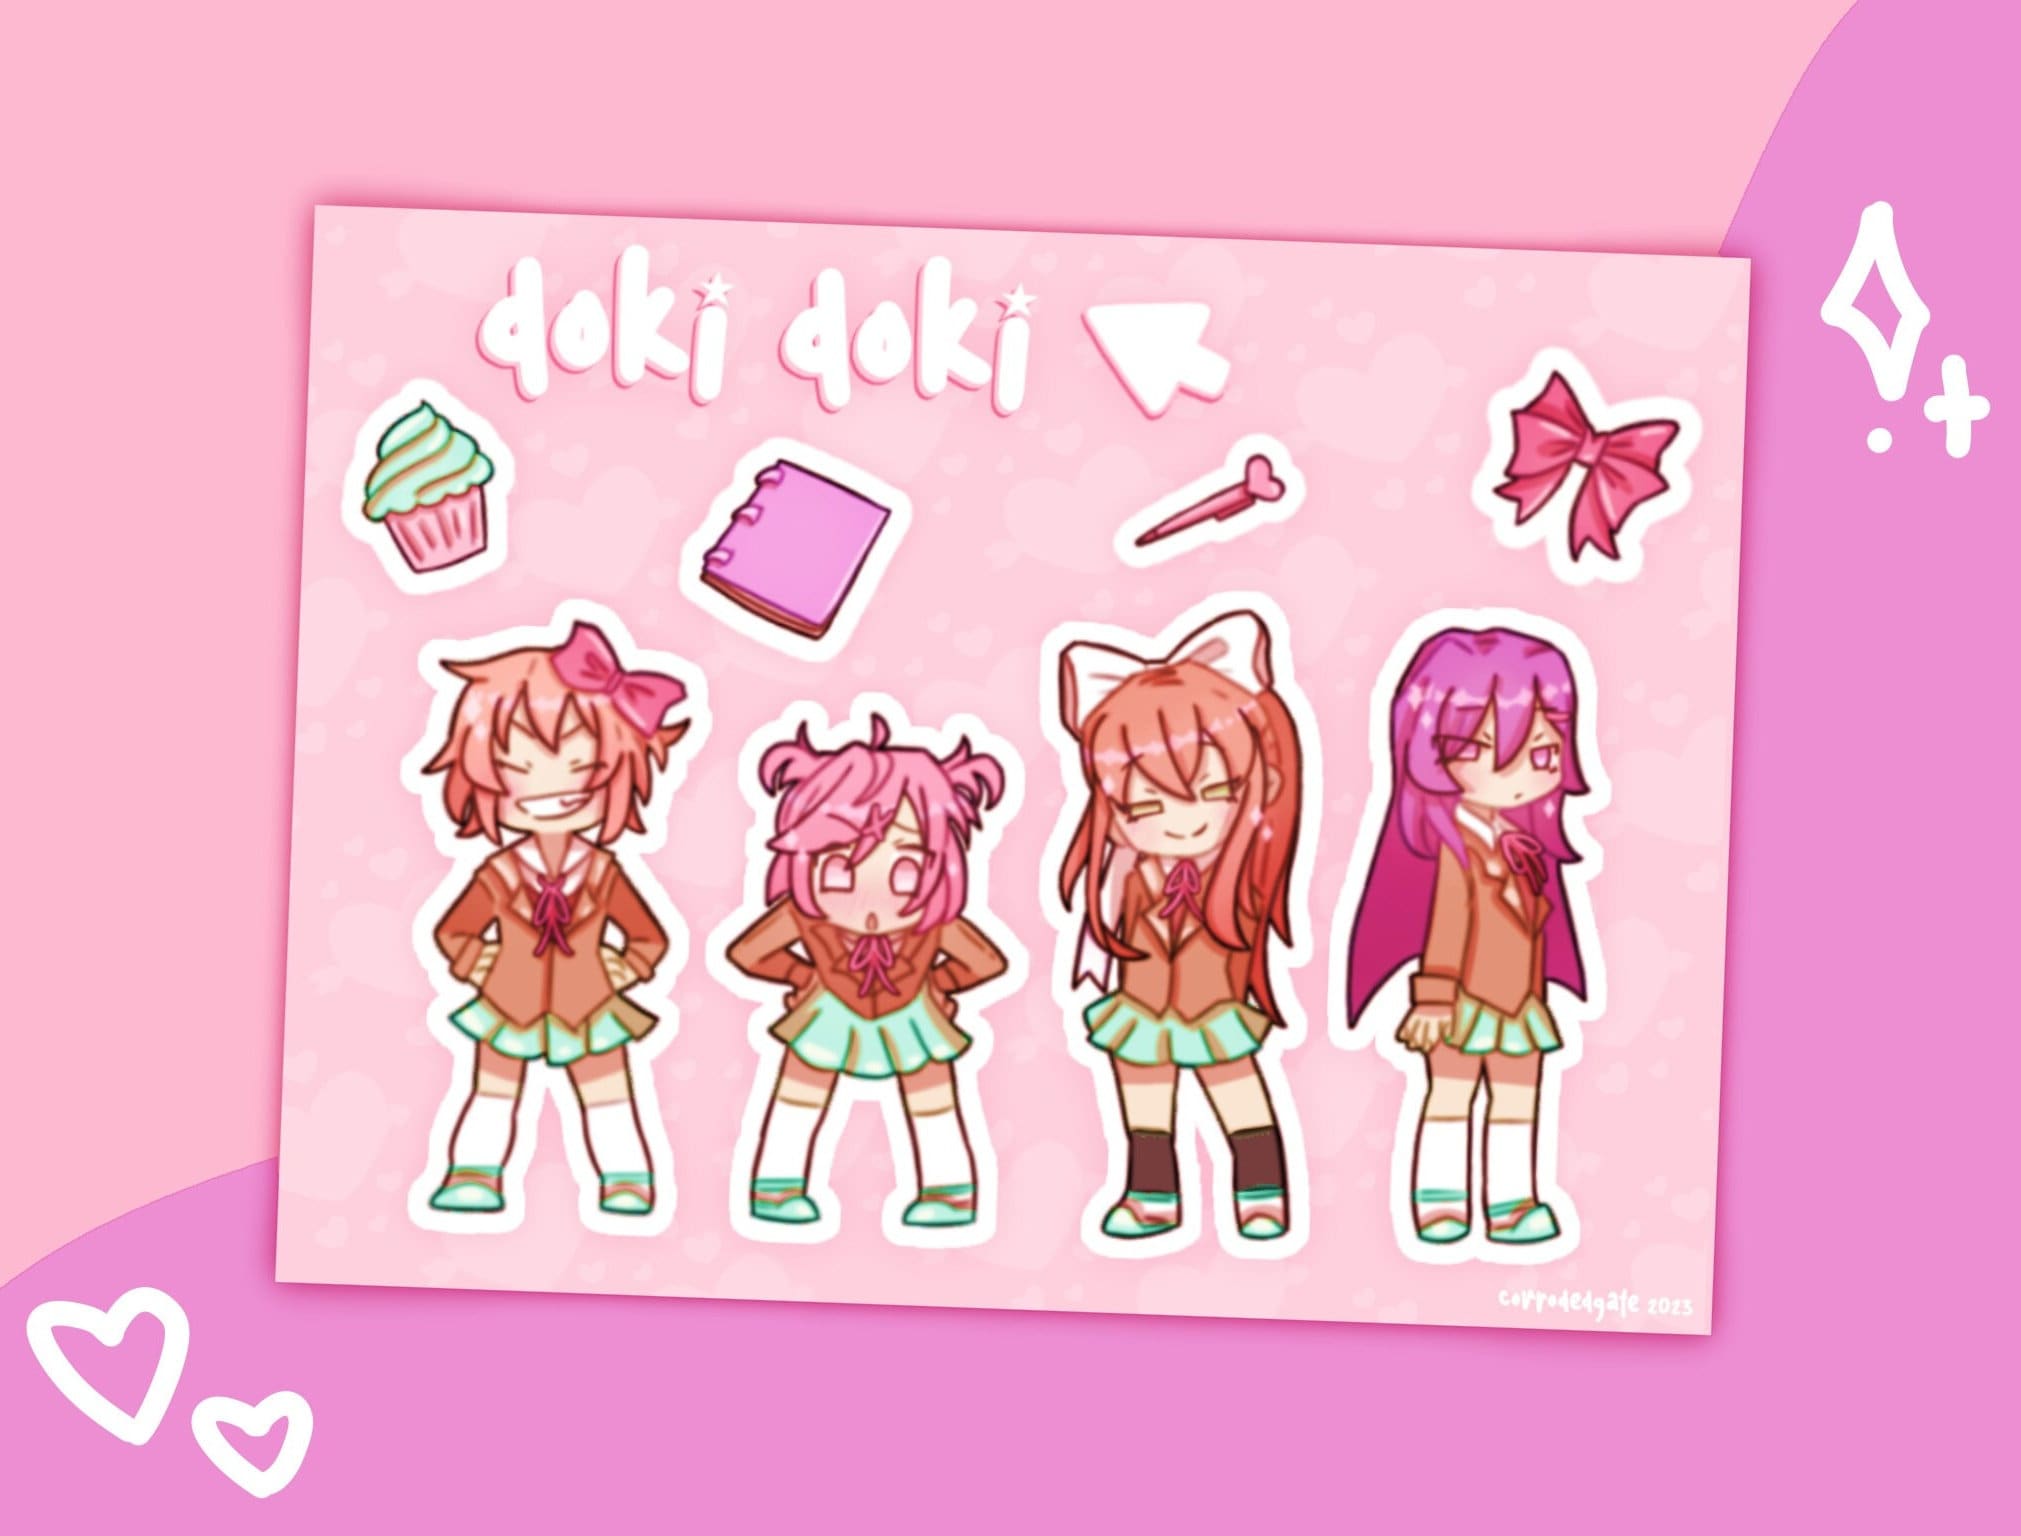 The DDLC girls in Gacha Club (Family-friendly version) : r/DDLC